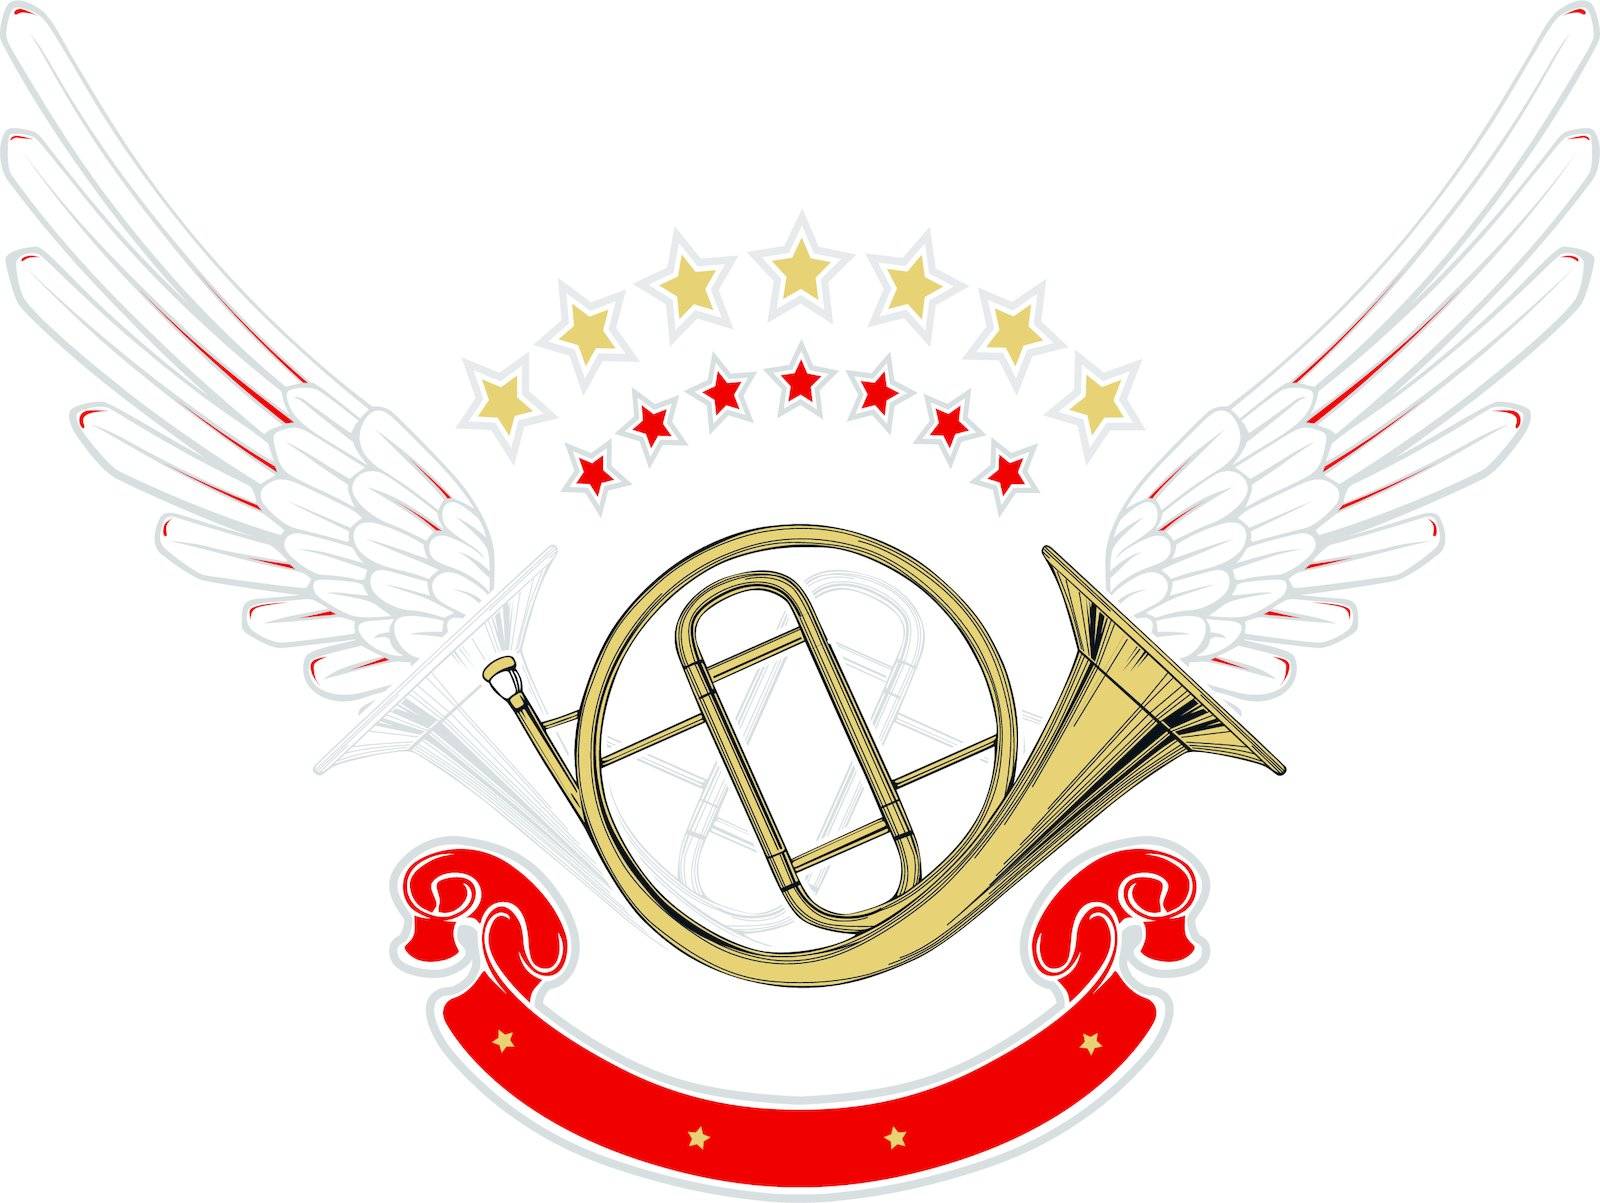 music wing emblem by lusik_kolbaskin